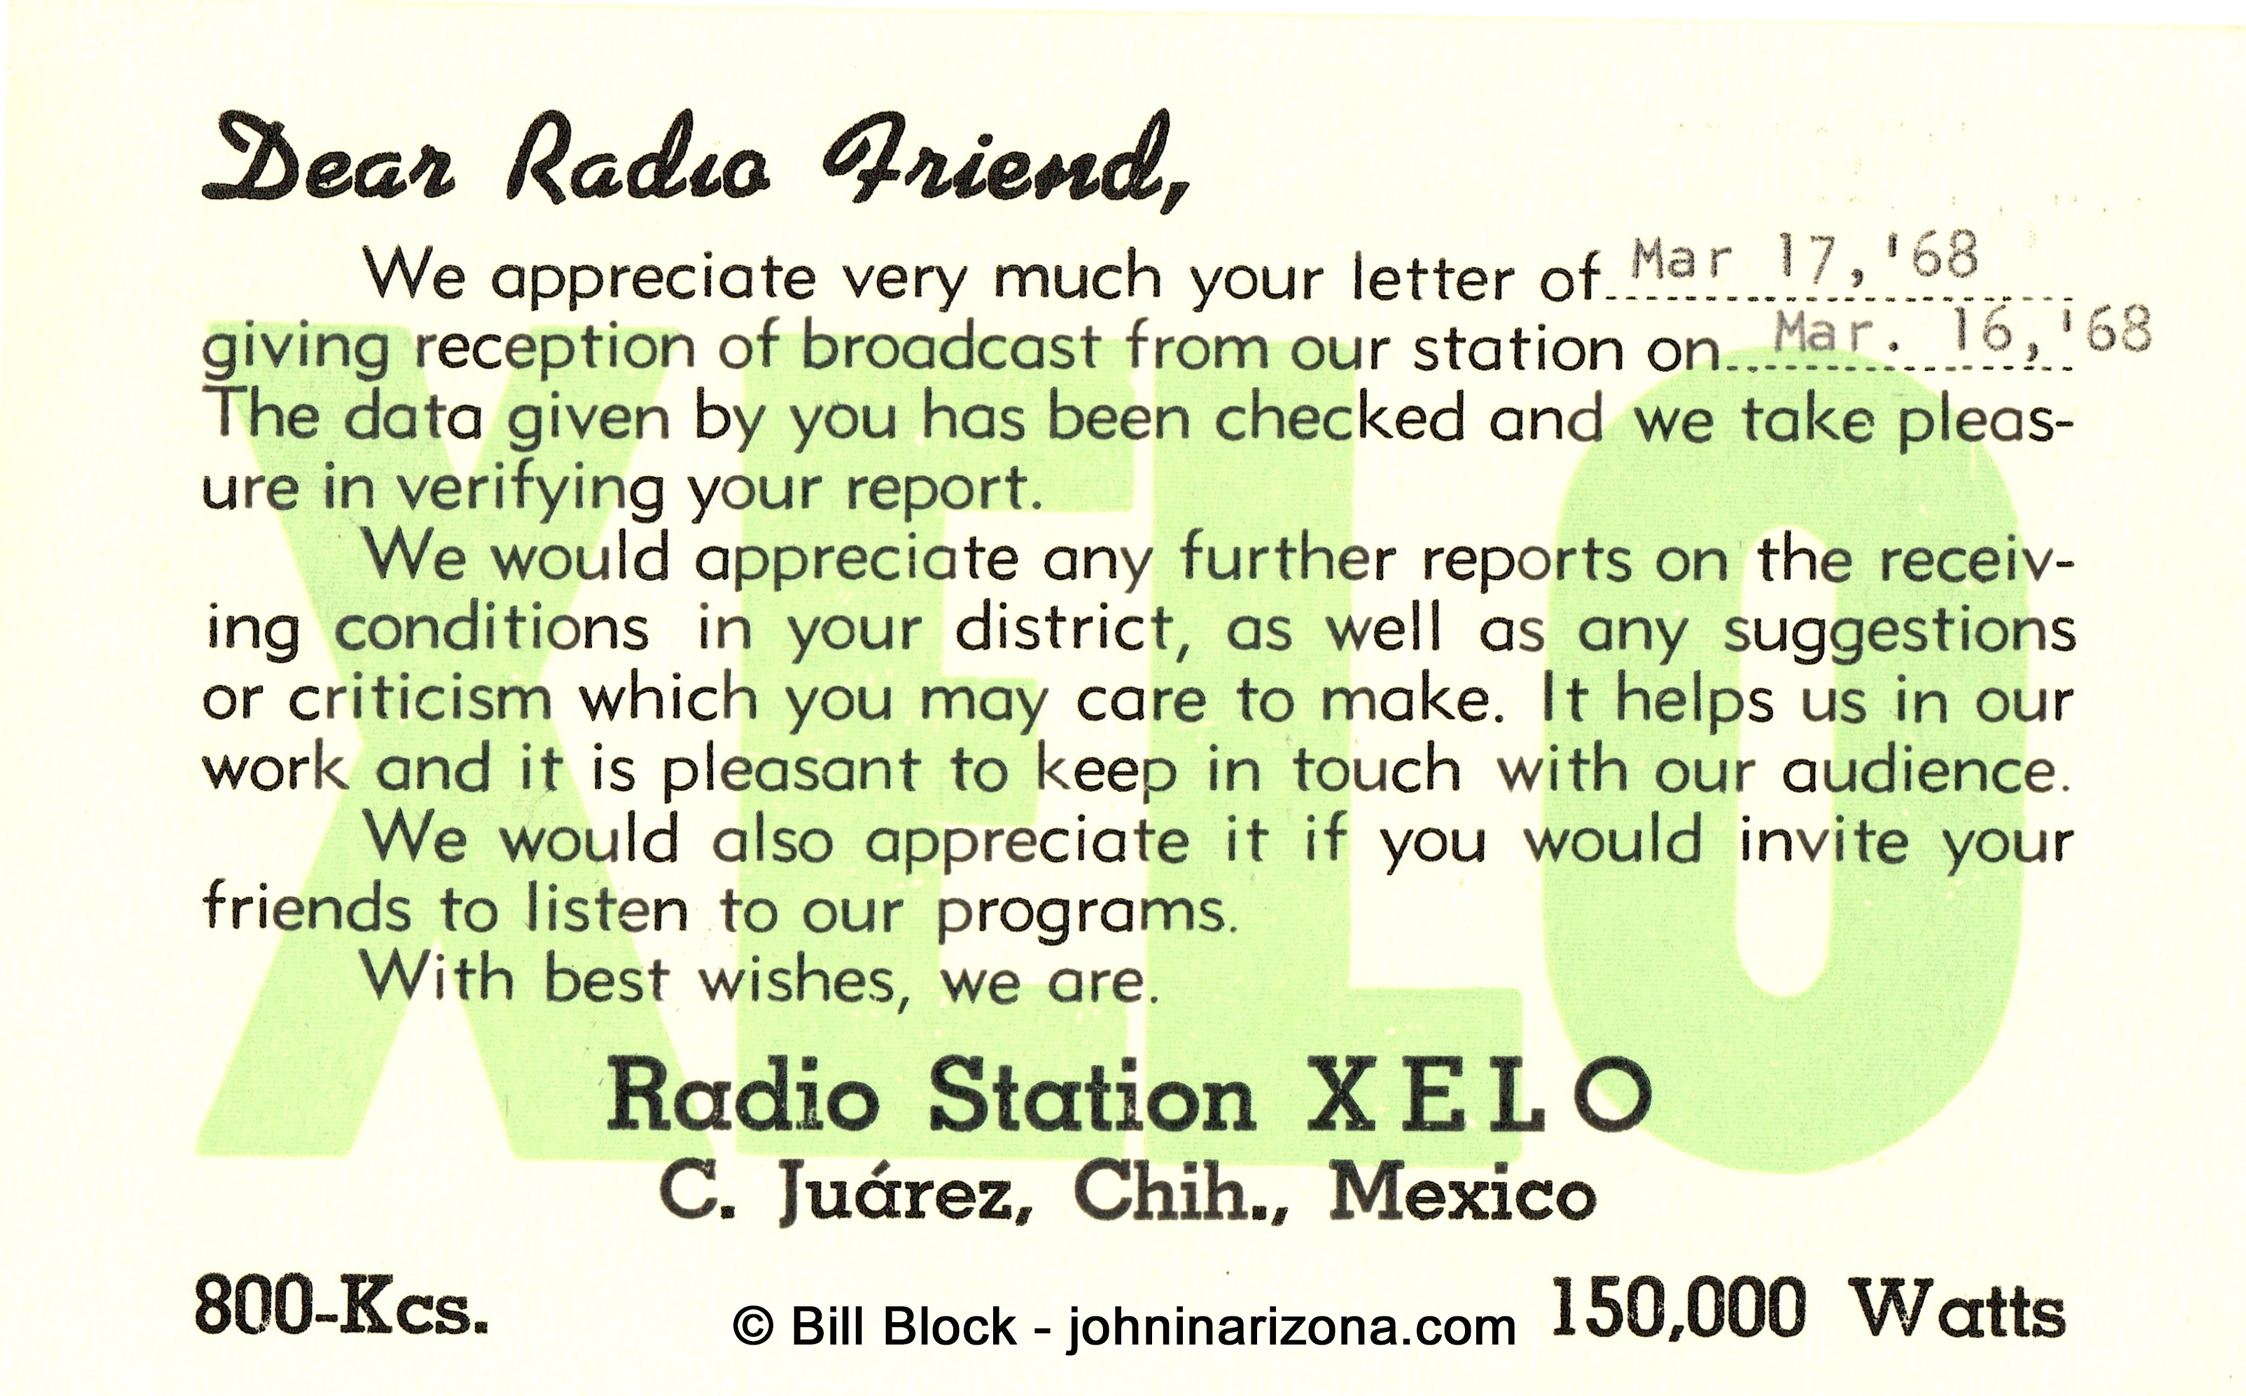 XELO Radio 800 Ciudad Jarez, Chihuahua, Mexico